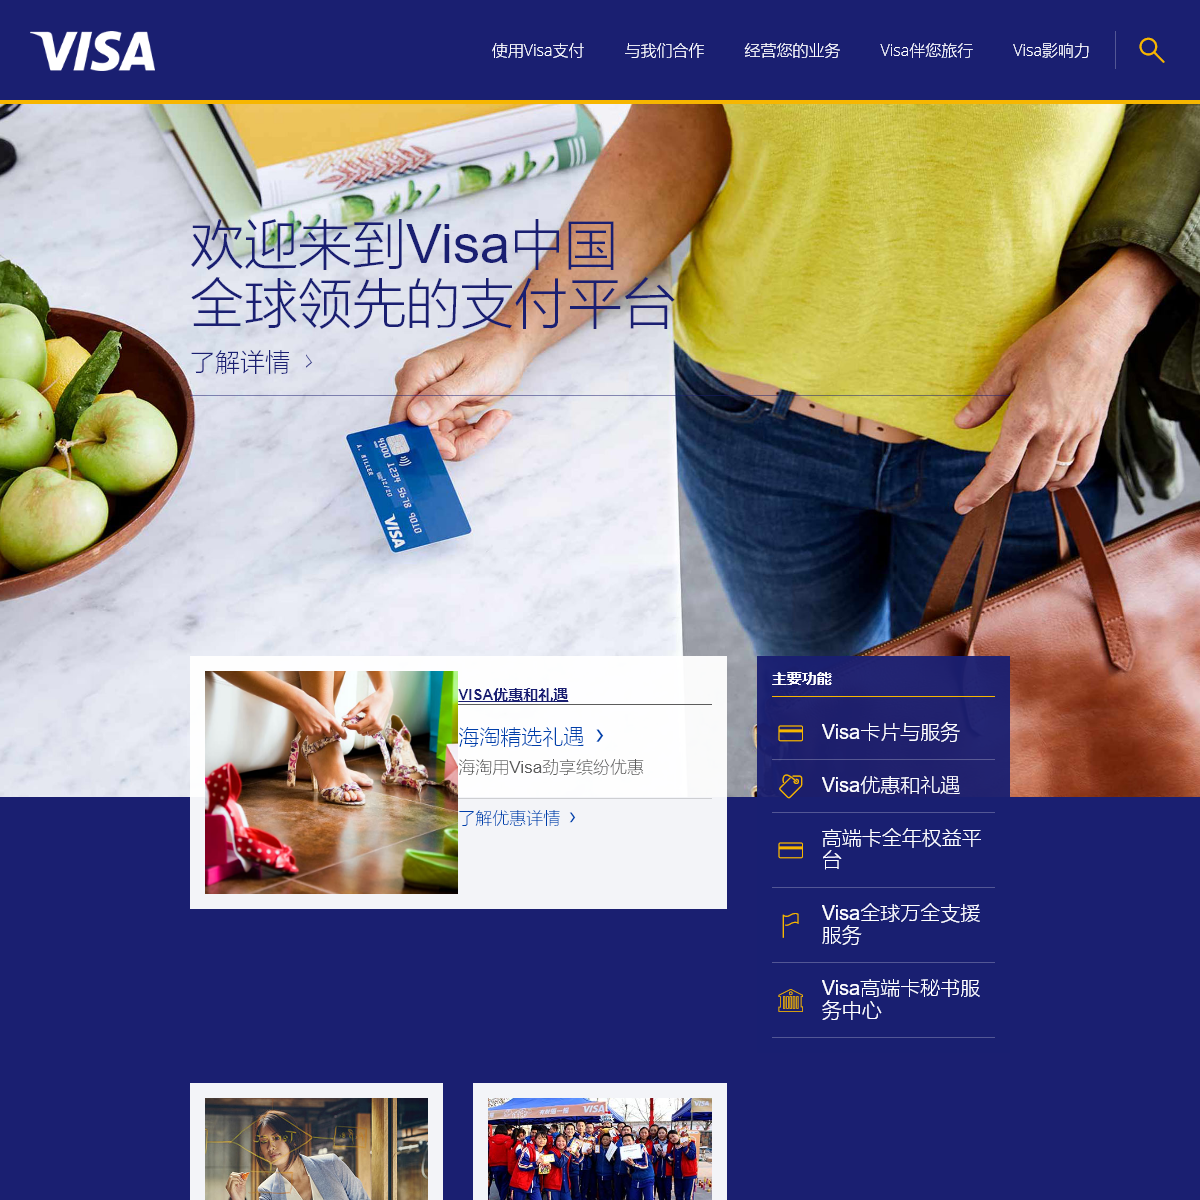 A complete backup of visa.com.cn